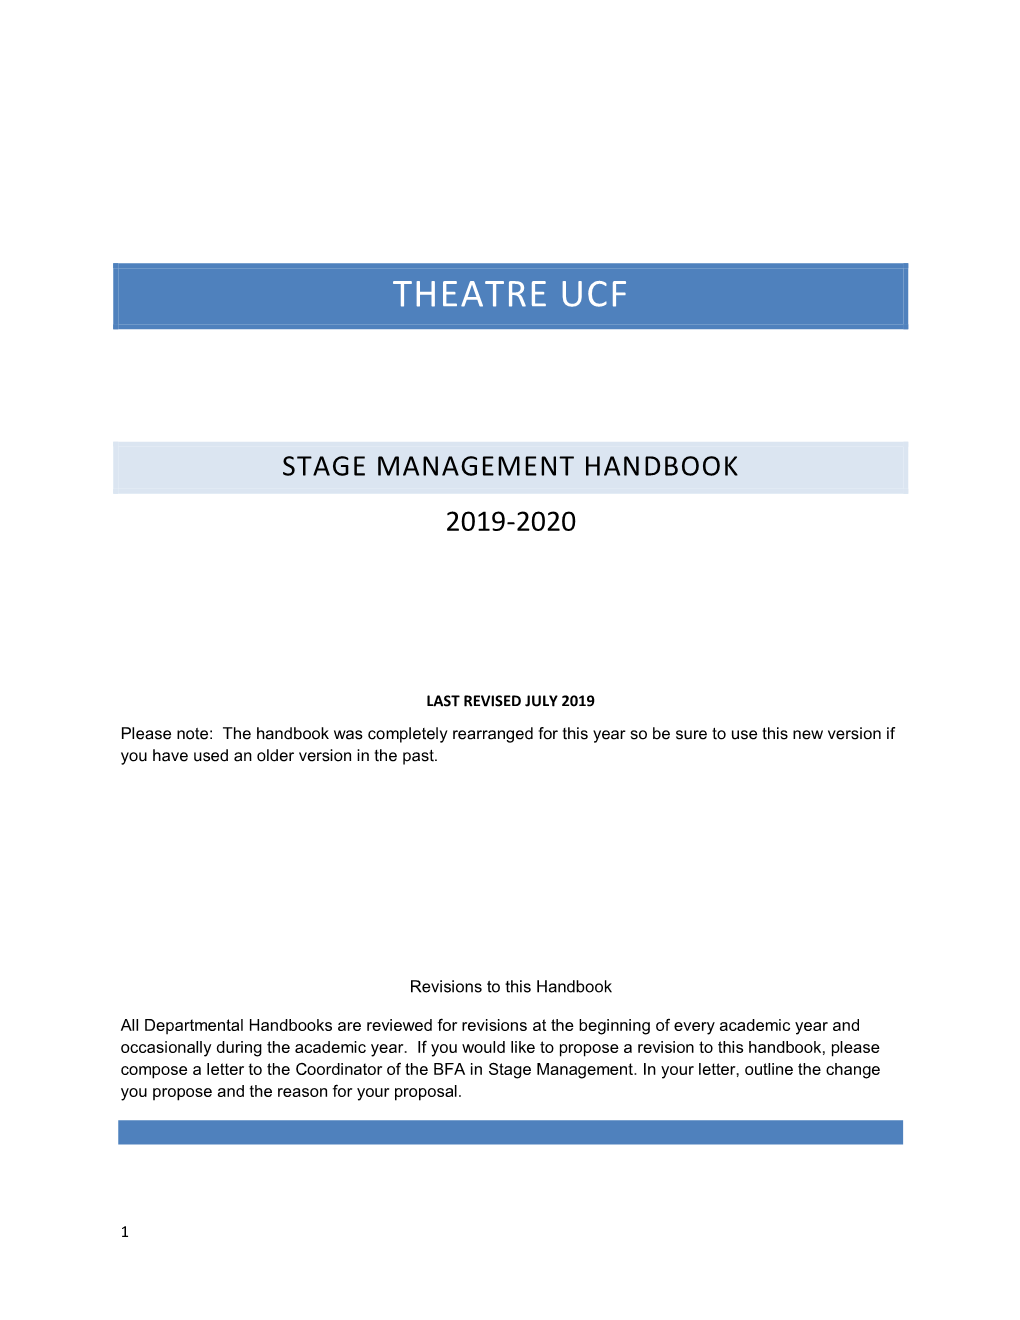 Stage Management Handbook 2019-2020